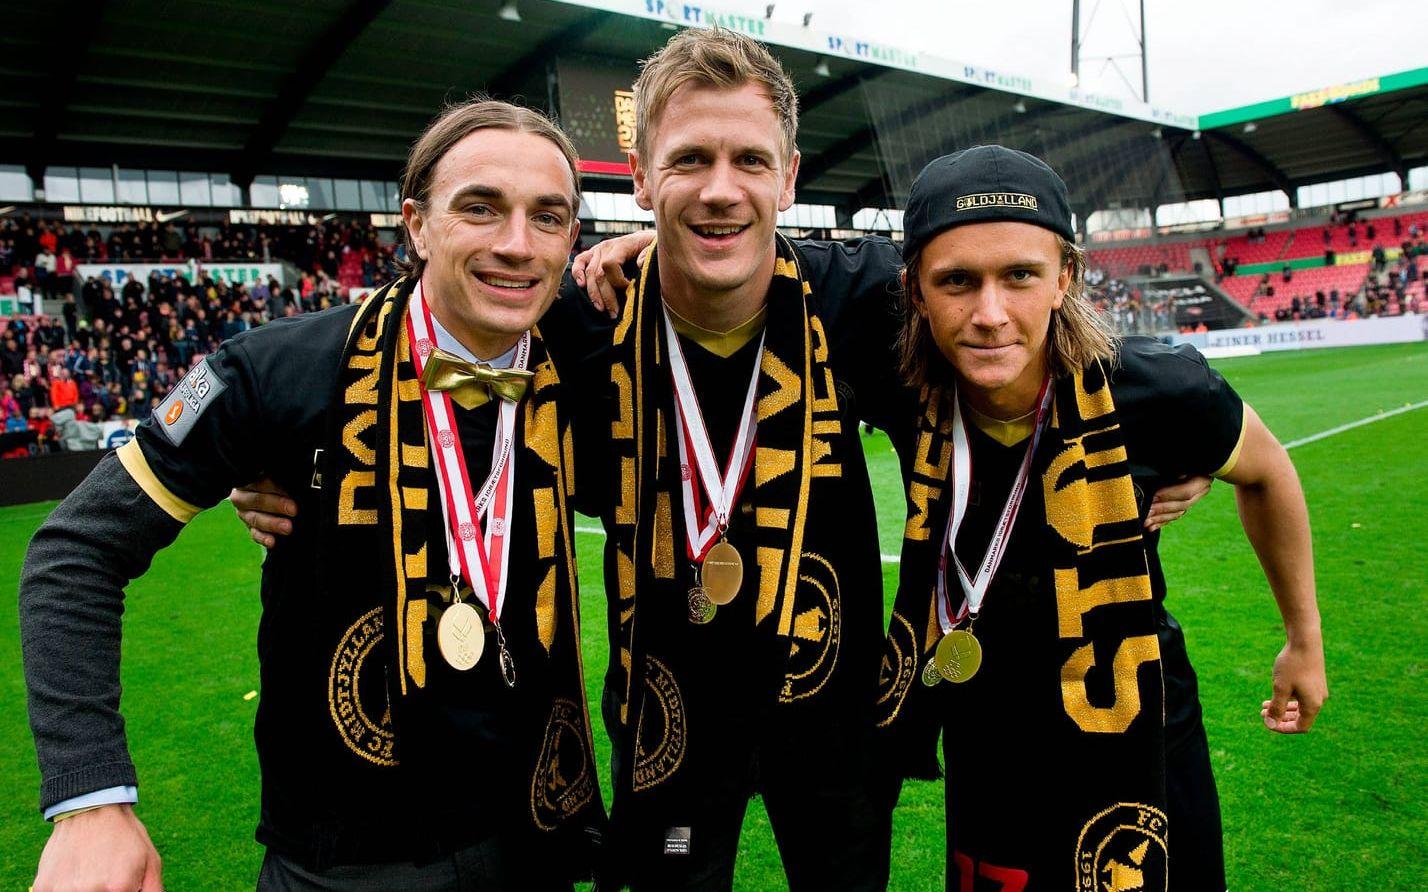 Med Midtjylland blev han dansk mästare 2014/15, tillsammans med Petter Andersson och Kristoffer Olsson. Foto: Bildbyrån